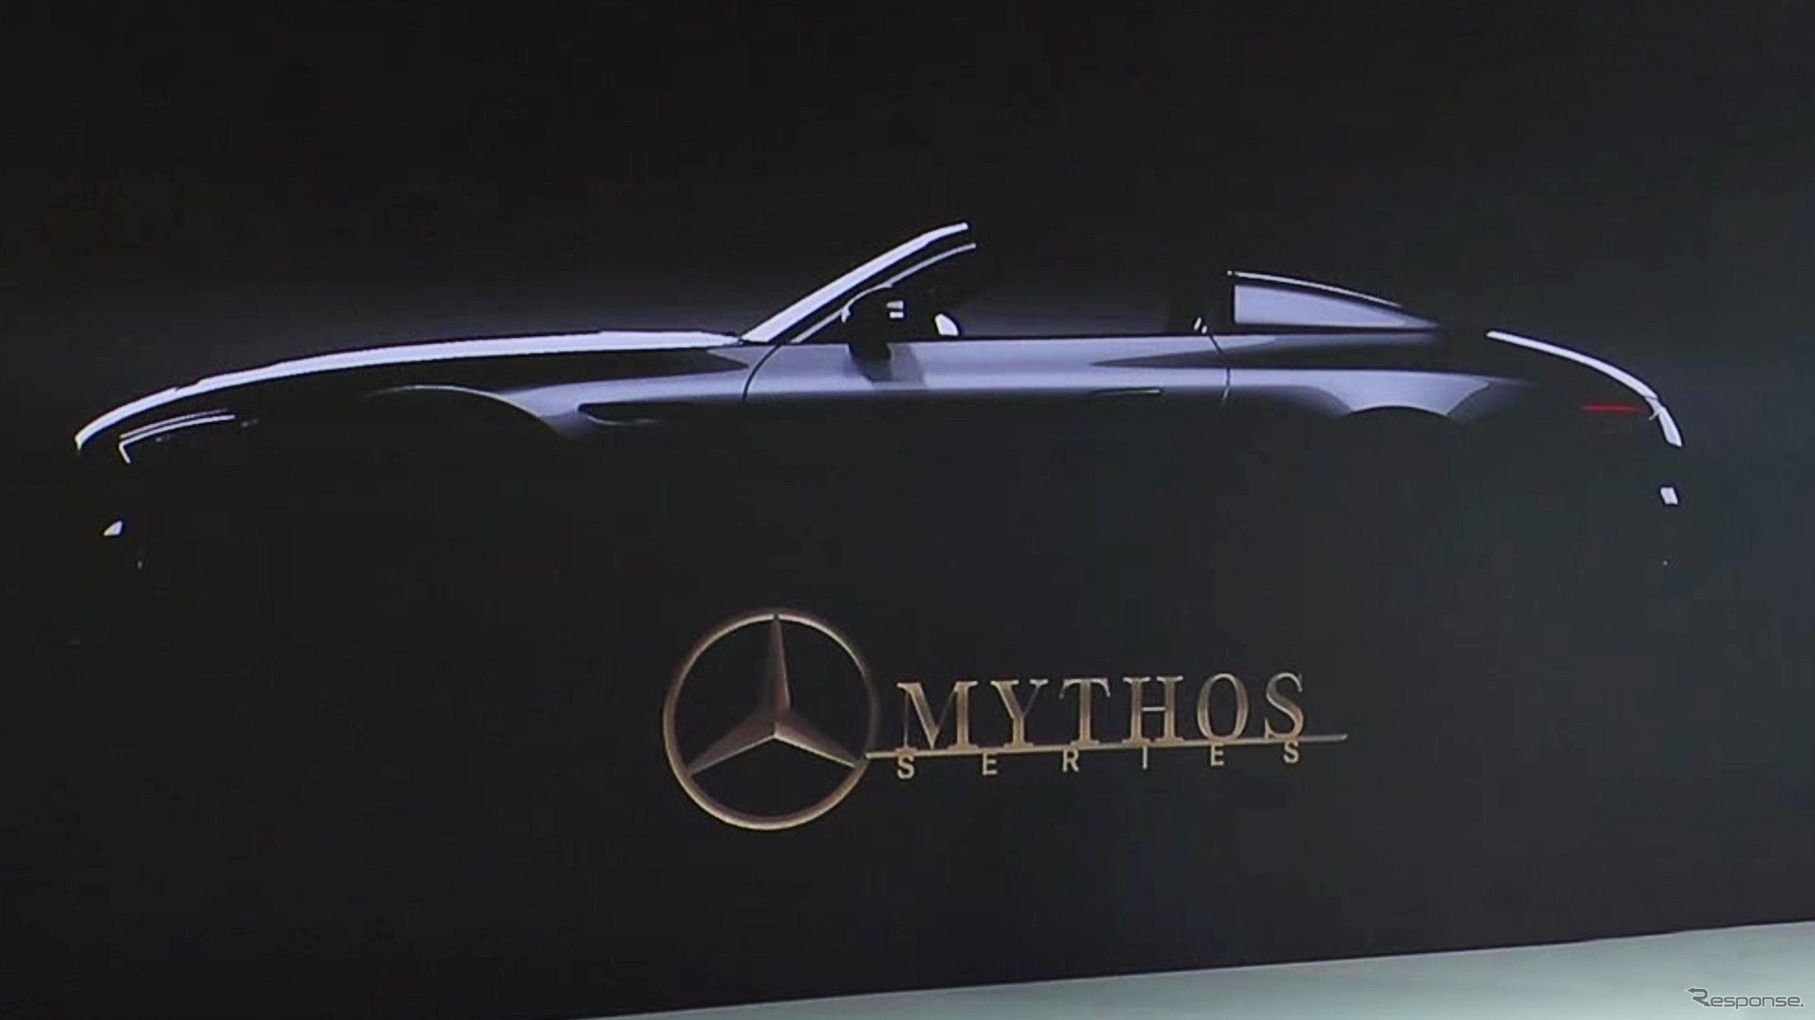 メルセデスベンツの超高級車ブランド「ミトス」の最初の市販車のティザー